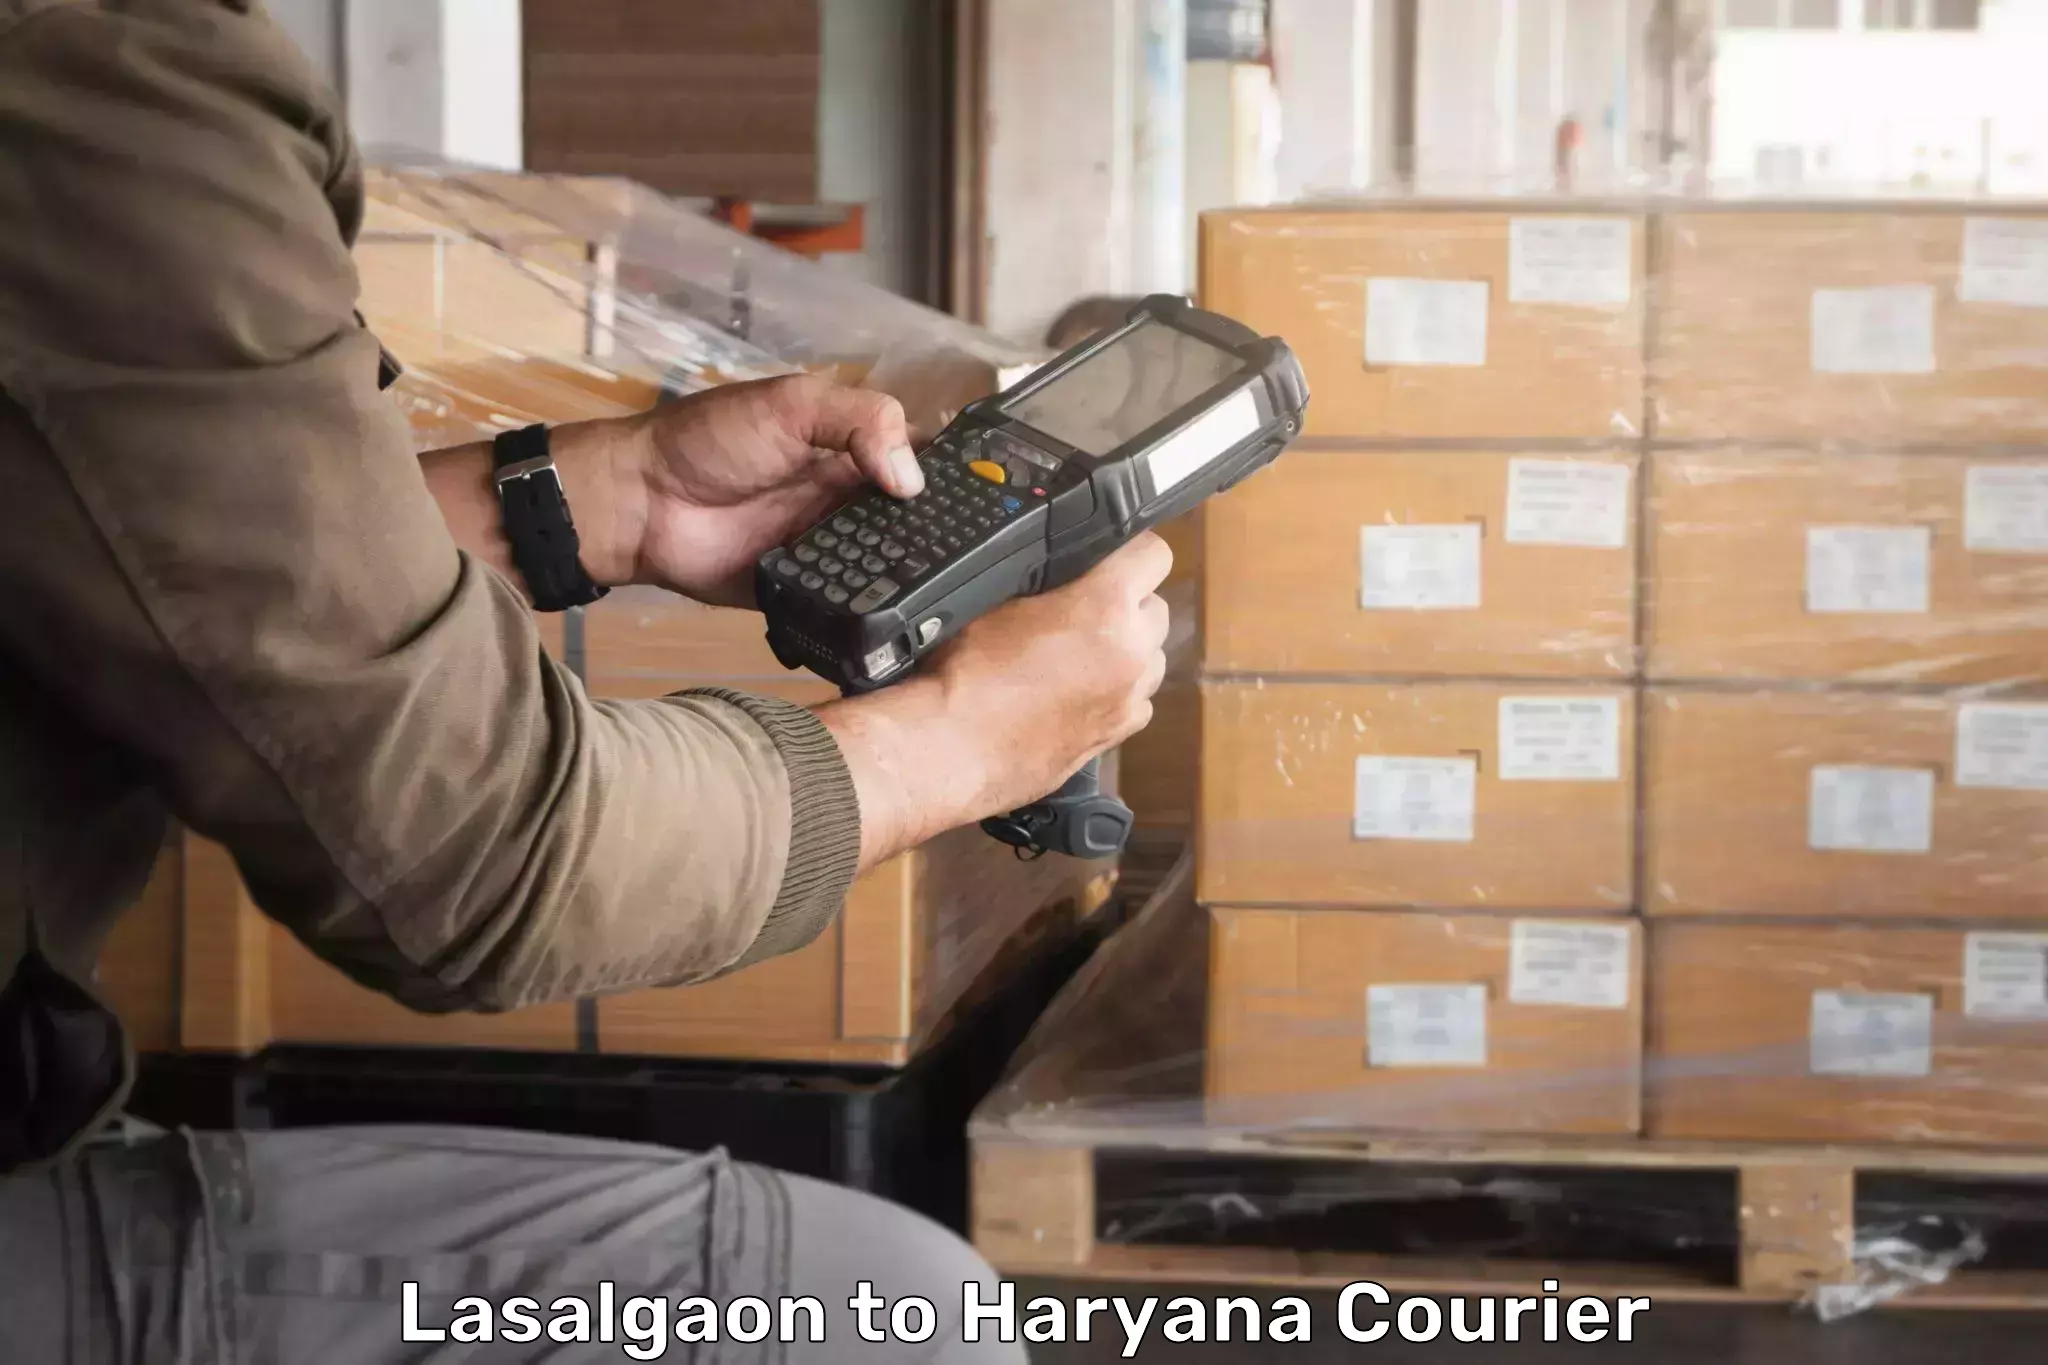 Courier tracking online Lasalgaon to Panchkula